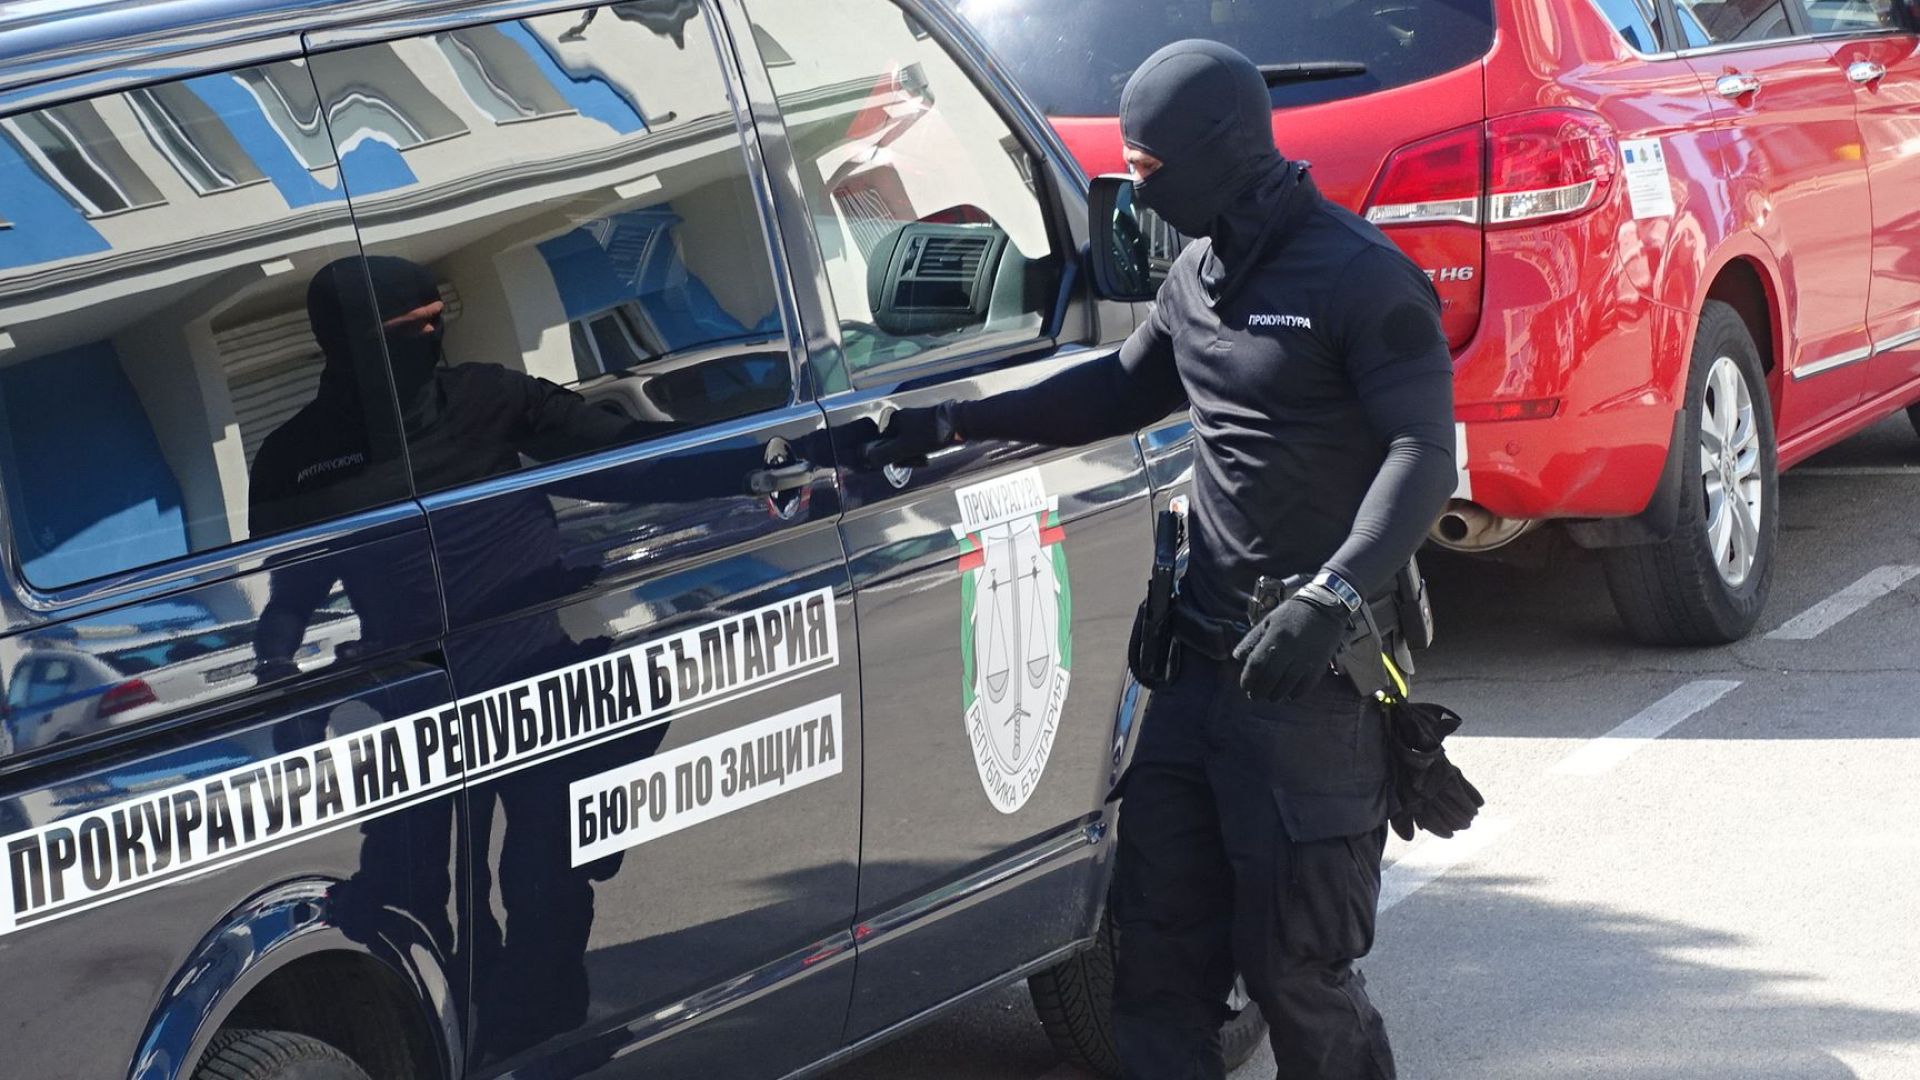 Задържаха и шефа на "Охранителна полиция" в Благоевград (обновена)